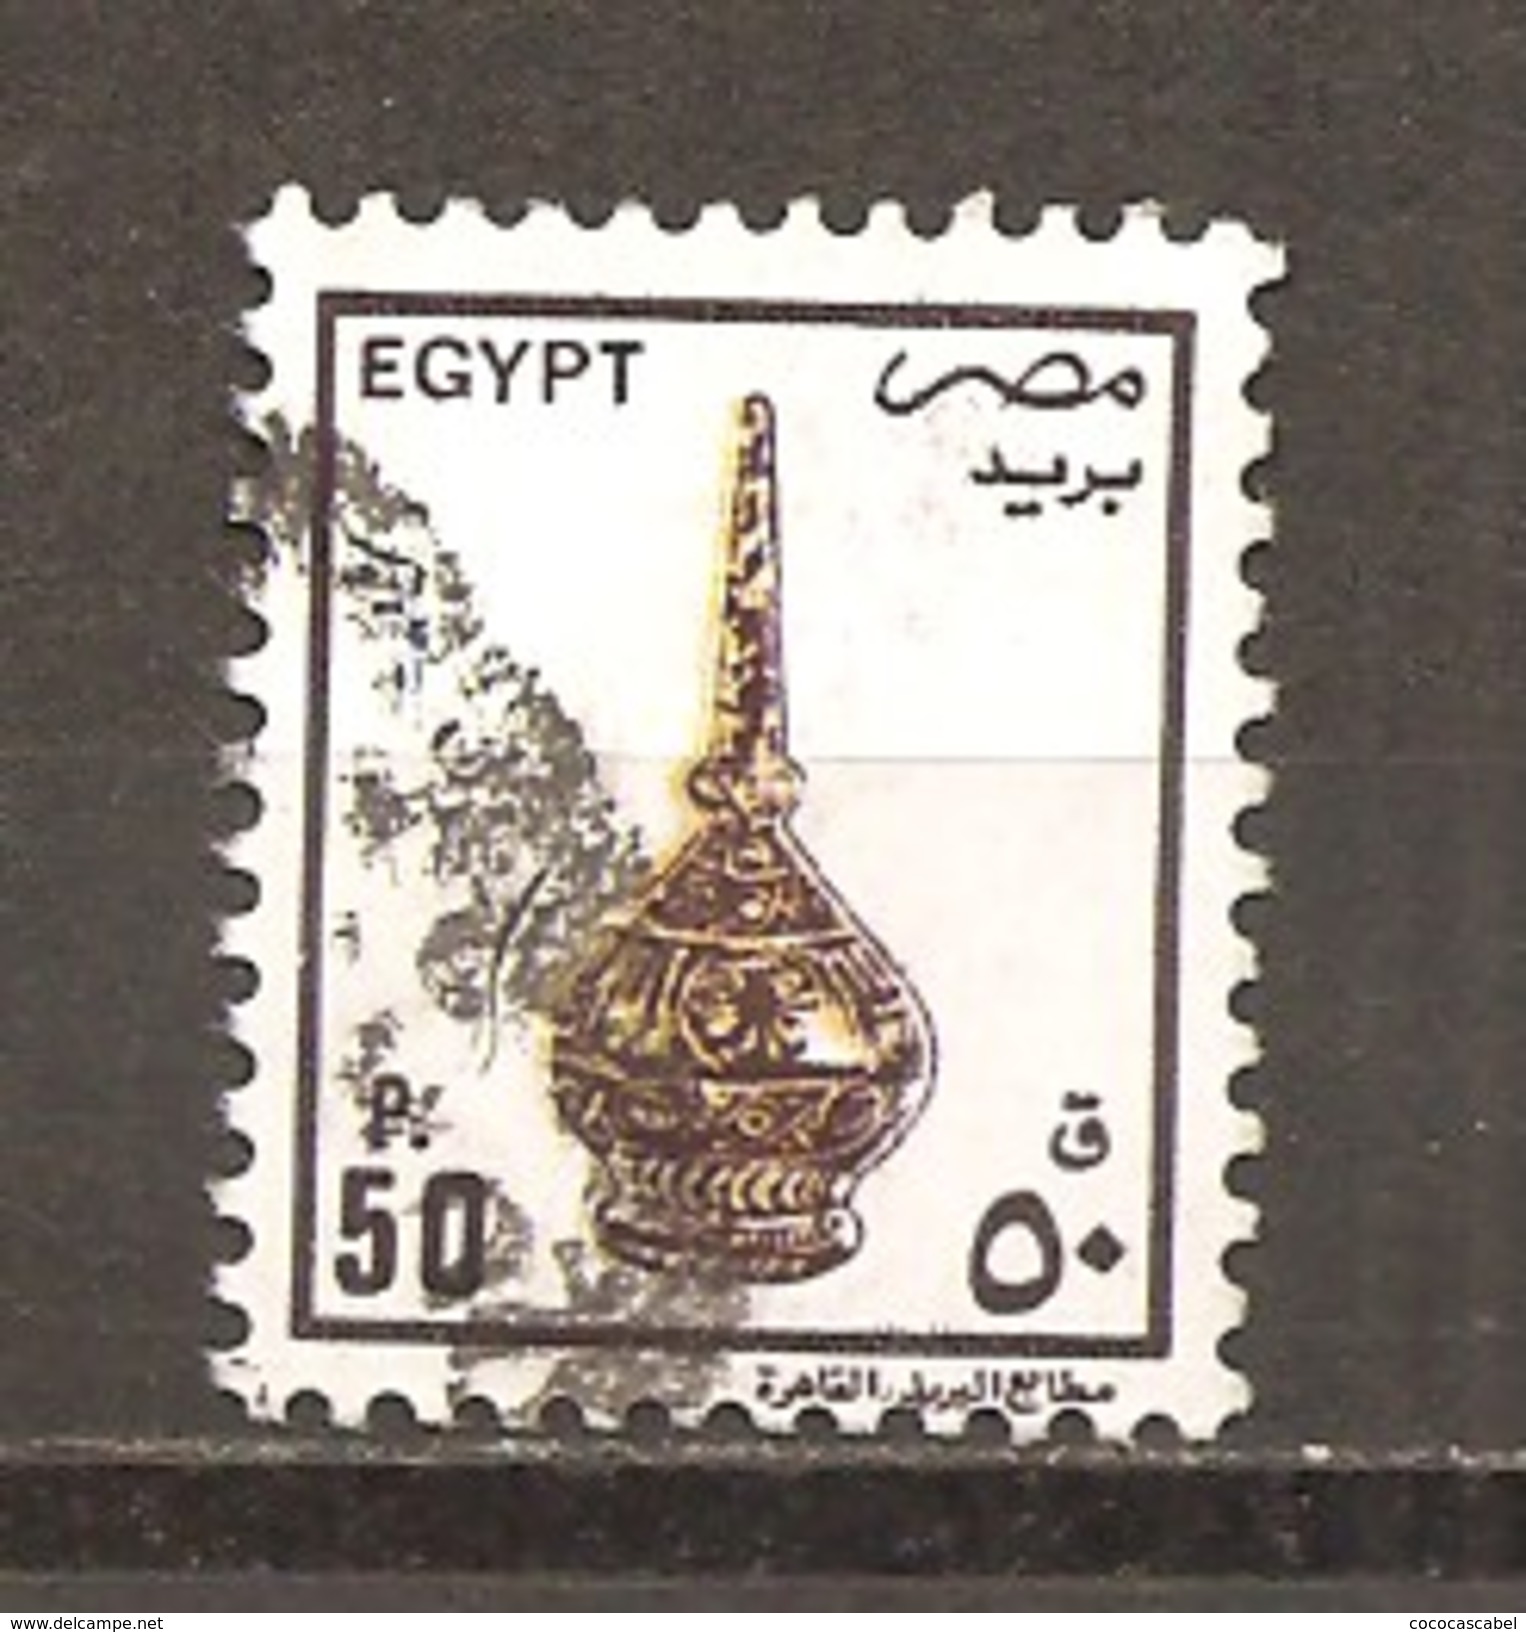 Egipto - Egypt. Nº Yvert  1452 (usado) (o) - Used Stamps